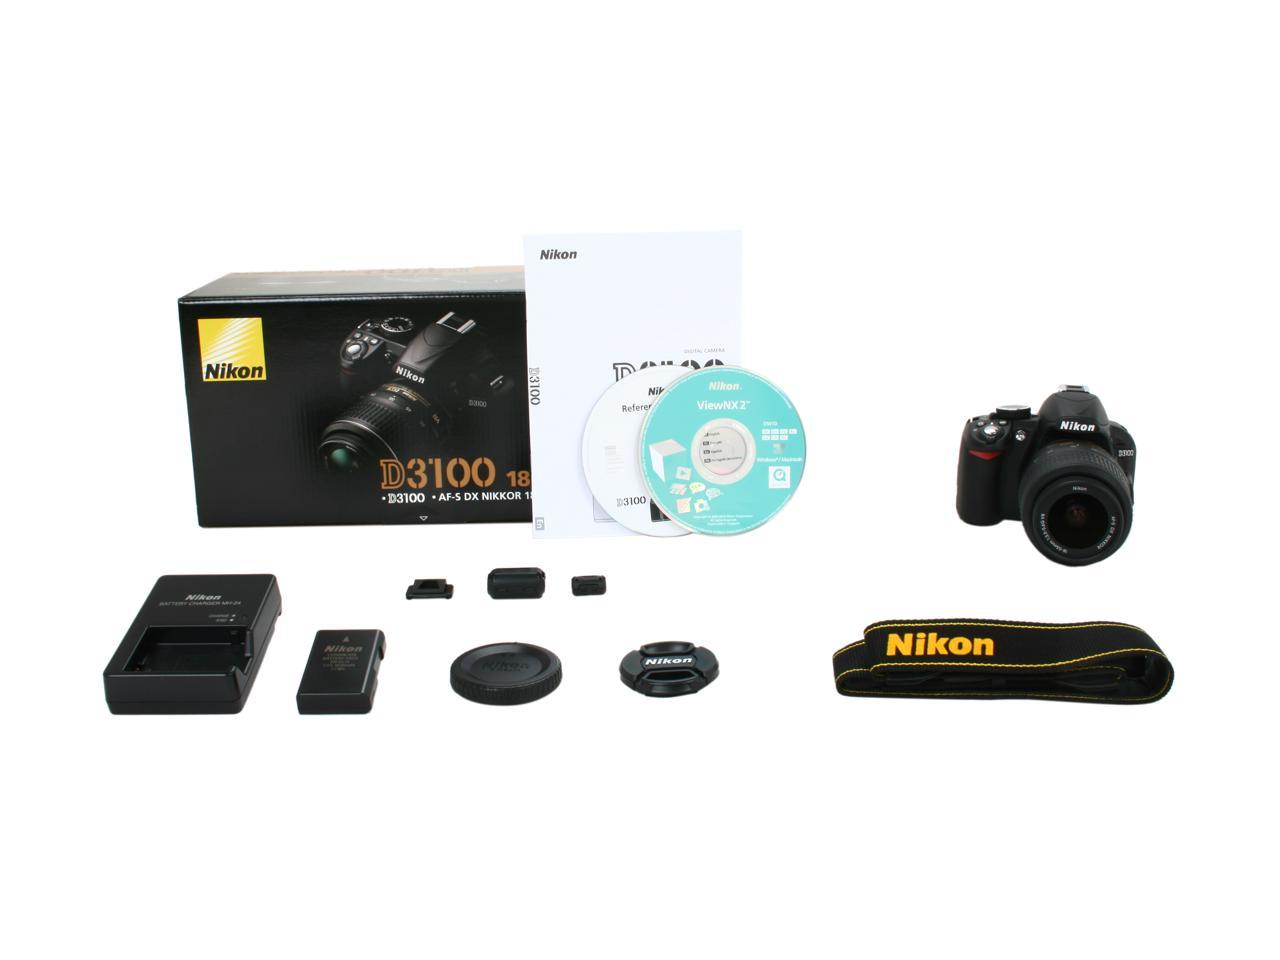 Nikon D3100 /18-55mm f3.5-5.6G #68520-